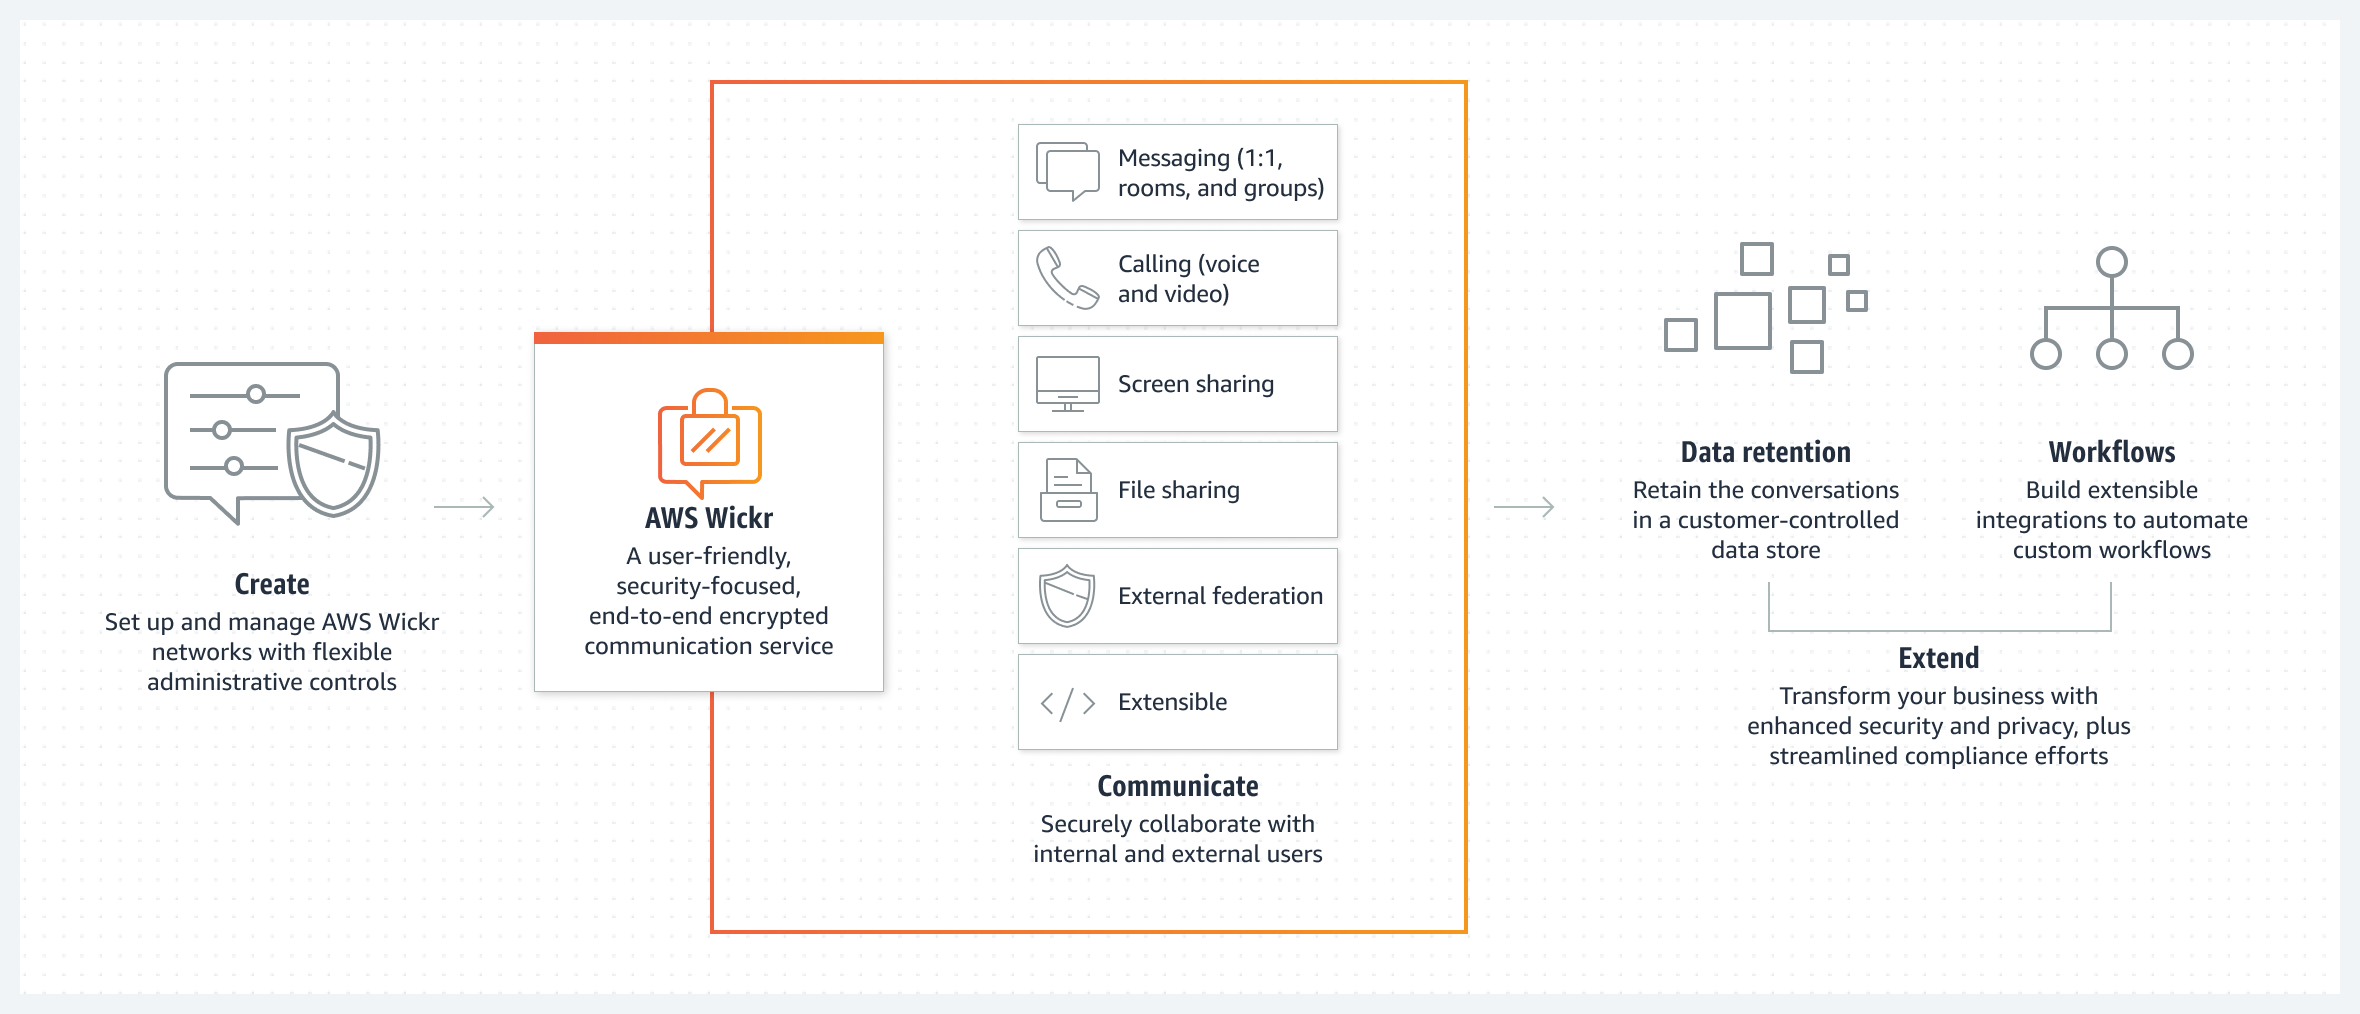 يوضح الرسم التخطيطي الطريقة التي يسمح بها AWS Wickr بالتعاون الذي يرتكز إلى الأمان من خلال الاتحاد.